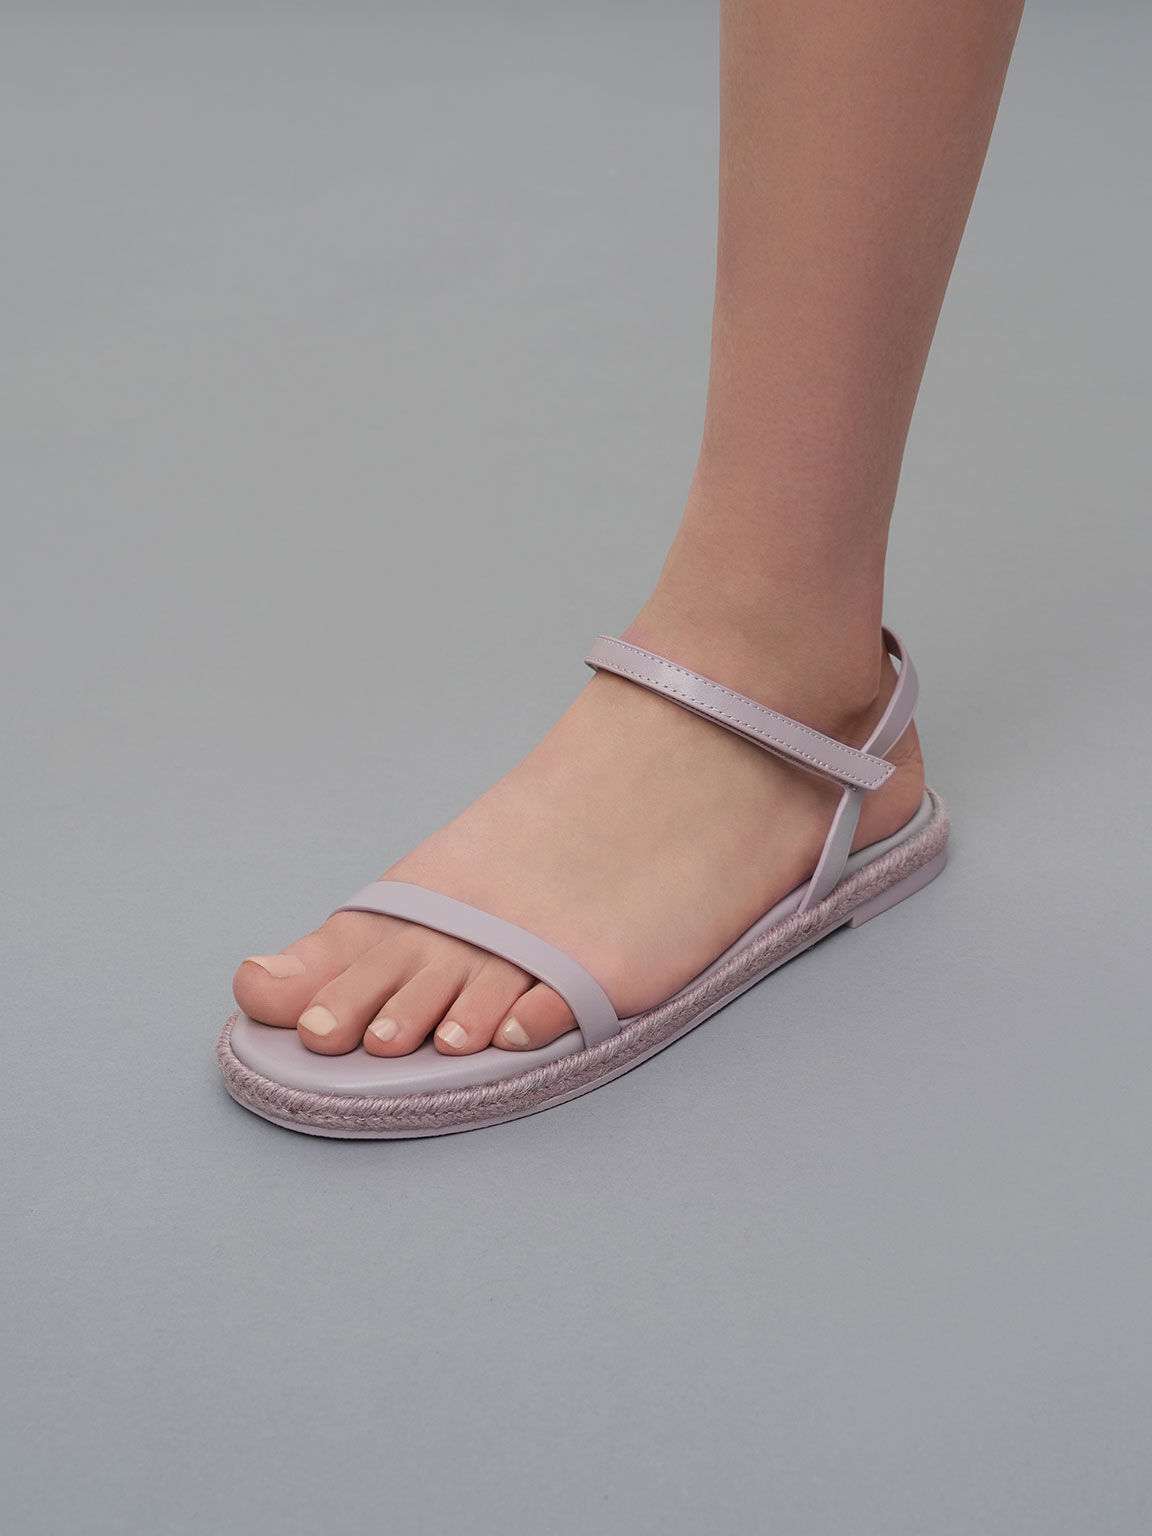 Sandal Flat Espadrille Ankle-Strap, Lilac, hi-res